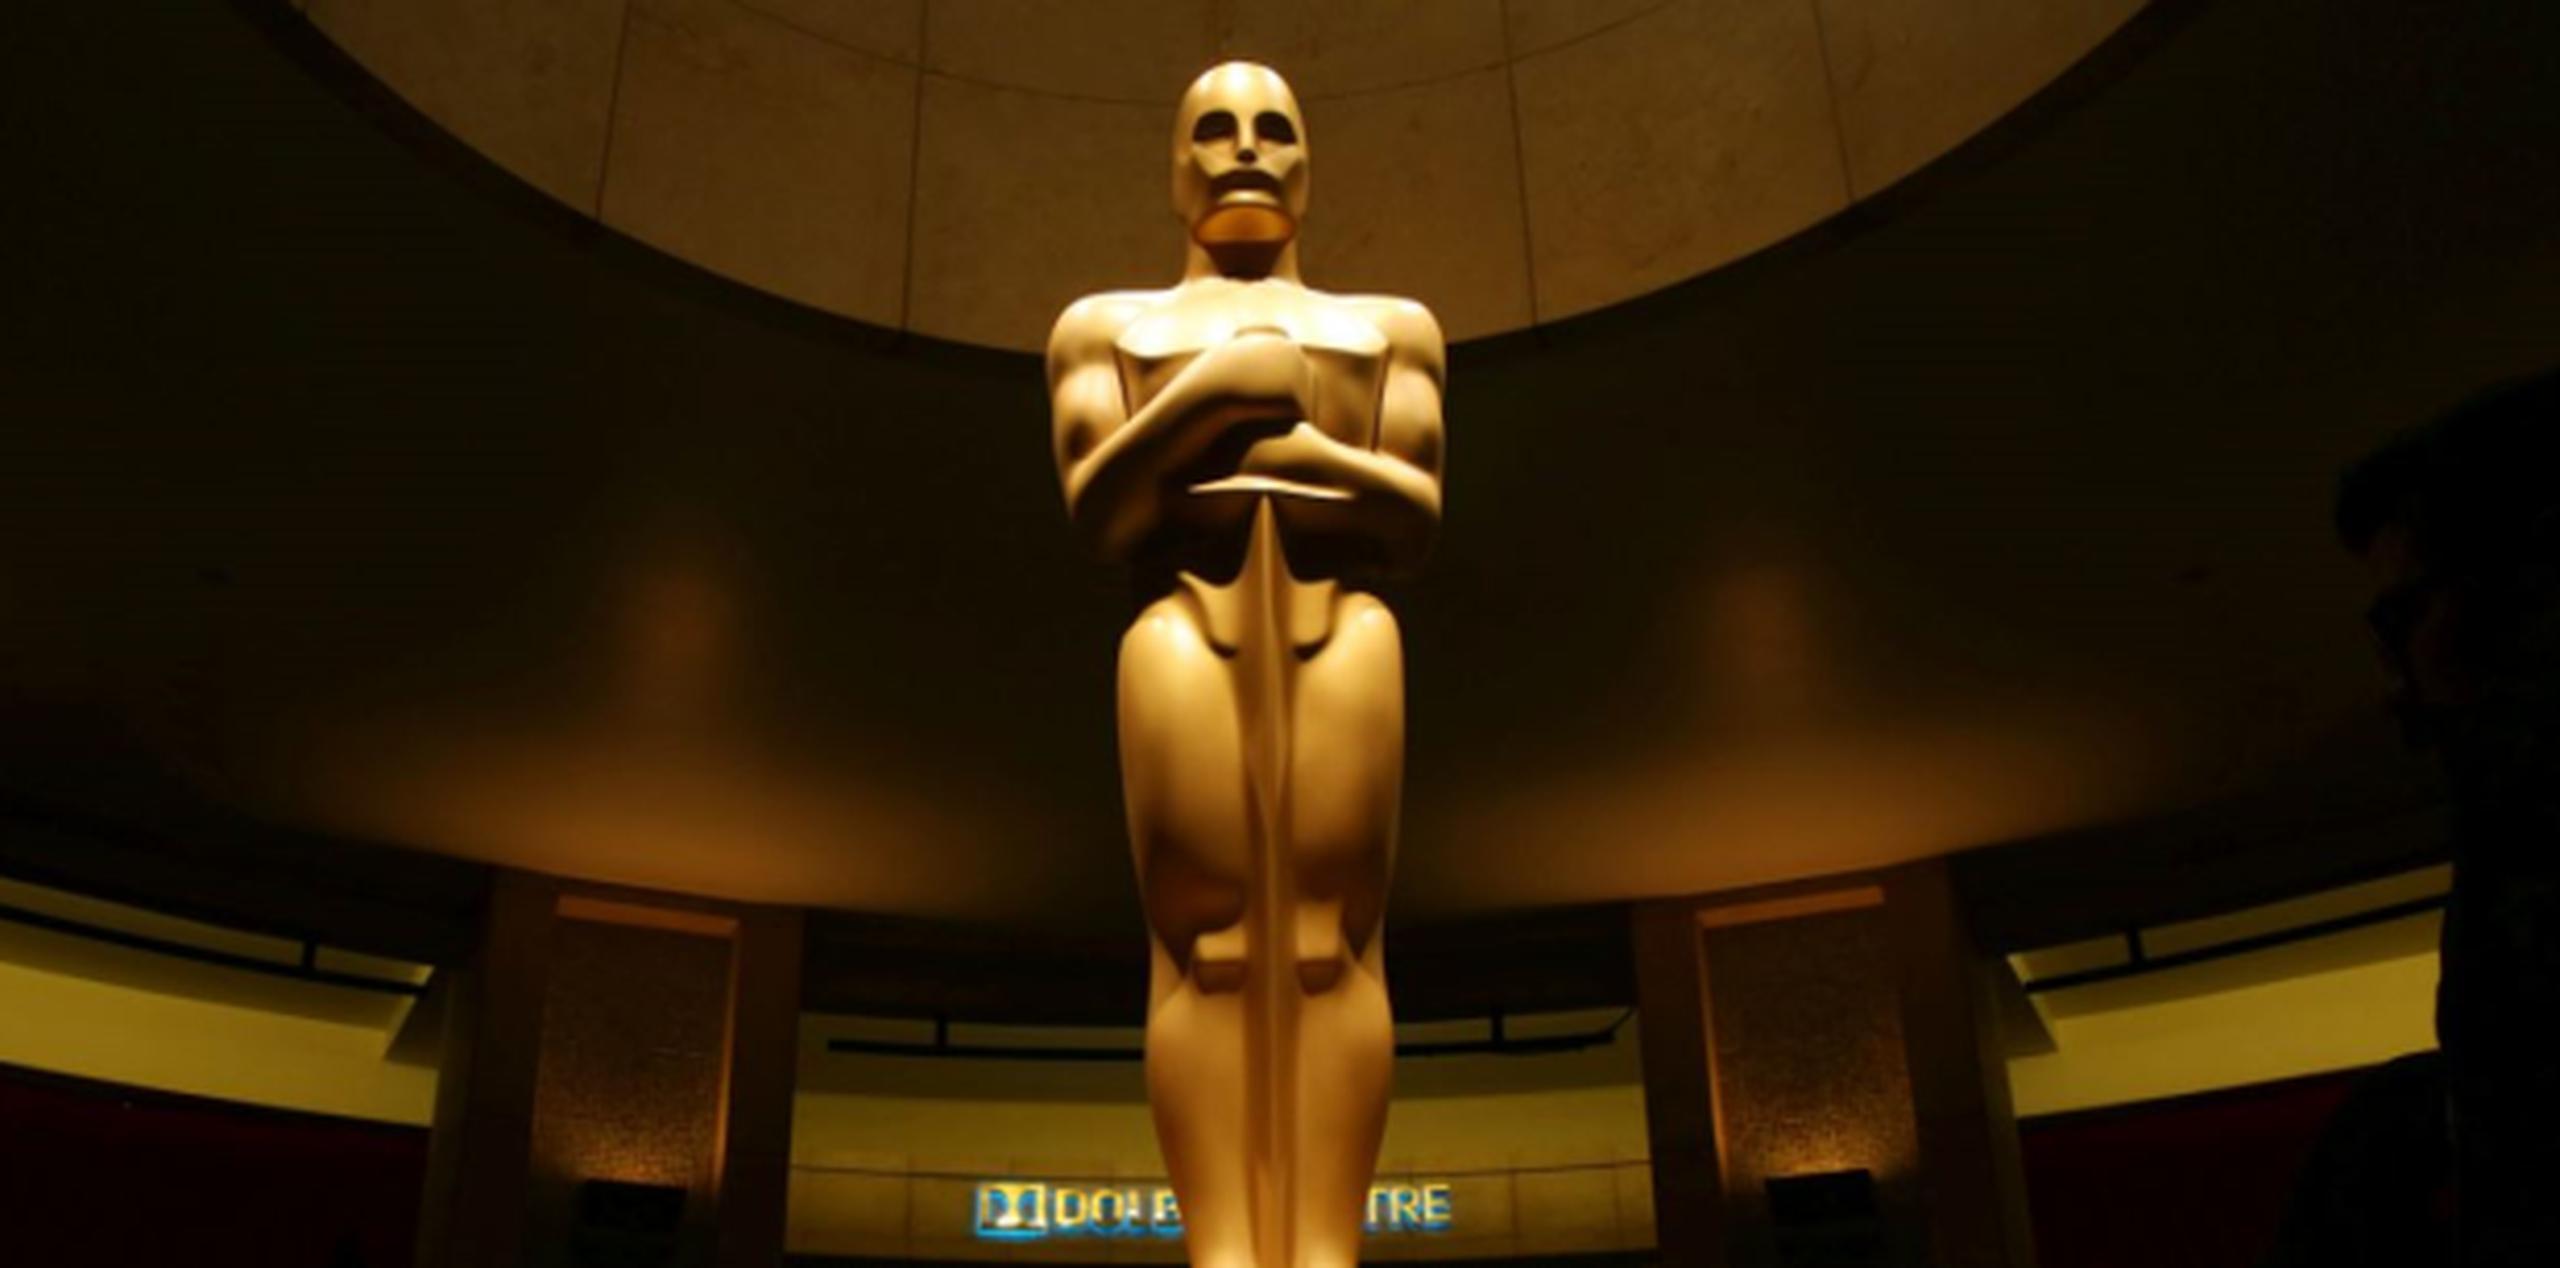 La presidenta de la Academia, Cheryl Boone Isaacs, dijo que la organización se toma "muy en serio el proceso de votación del Oscar". (AP)